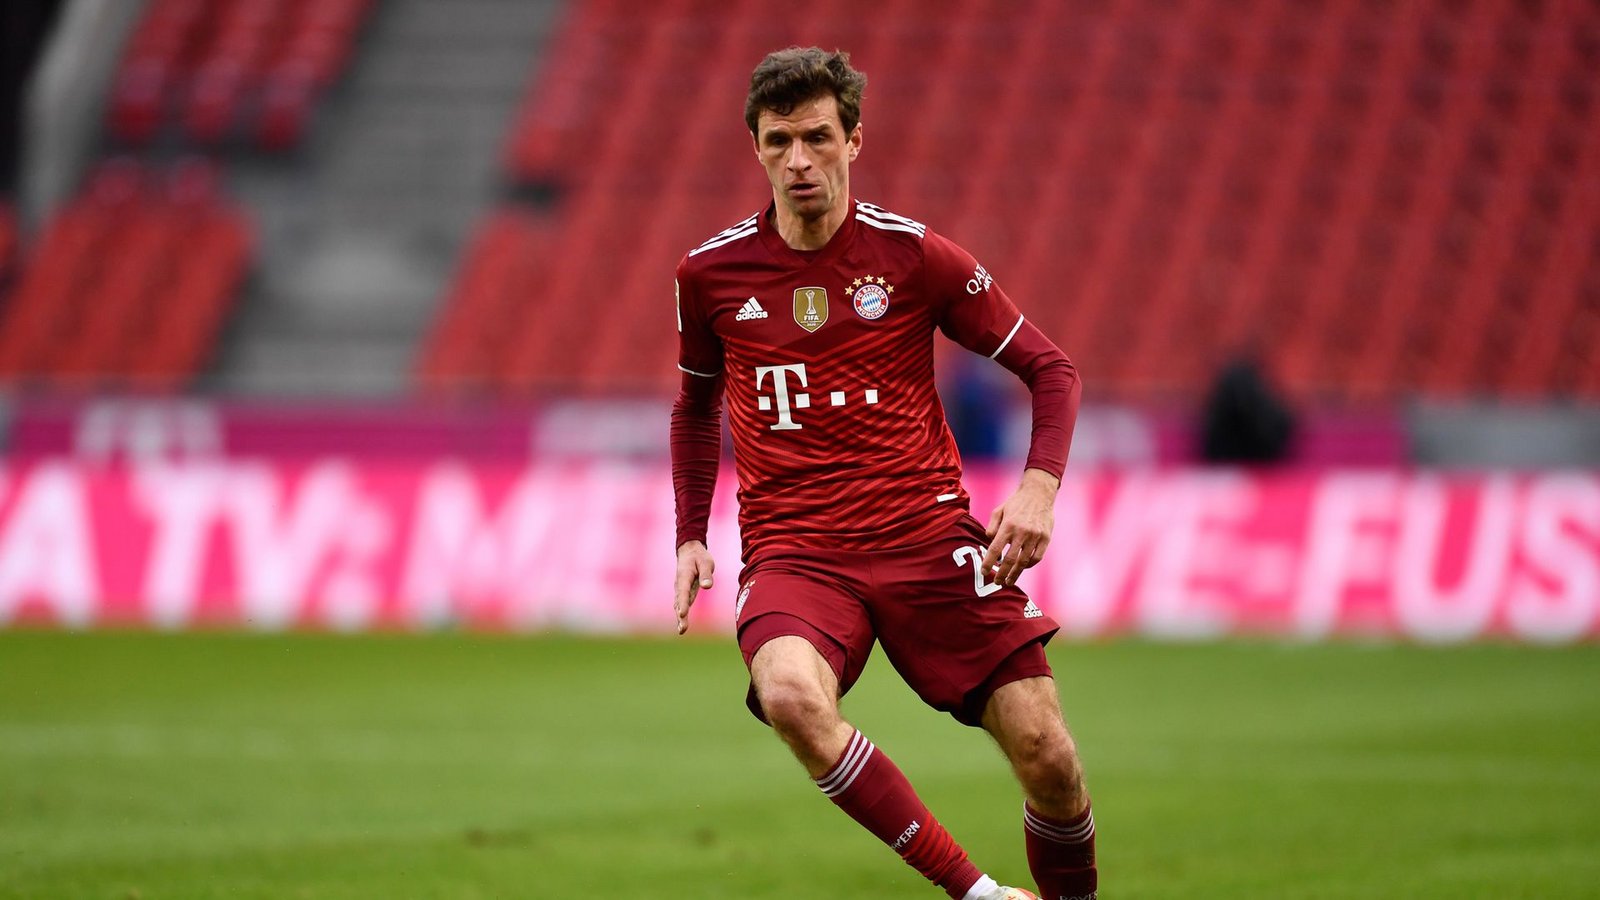 Thomas Müller steht mit dem FC Bayern München vor der zehnten Meisterschaft in Folge.Foto: Marius Becker/dpa